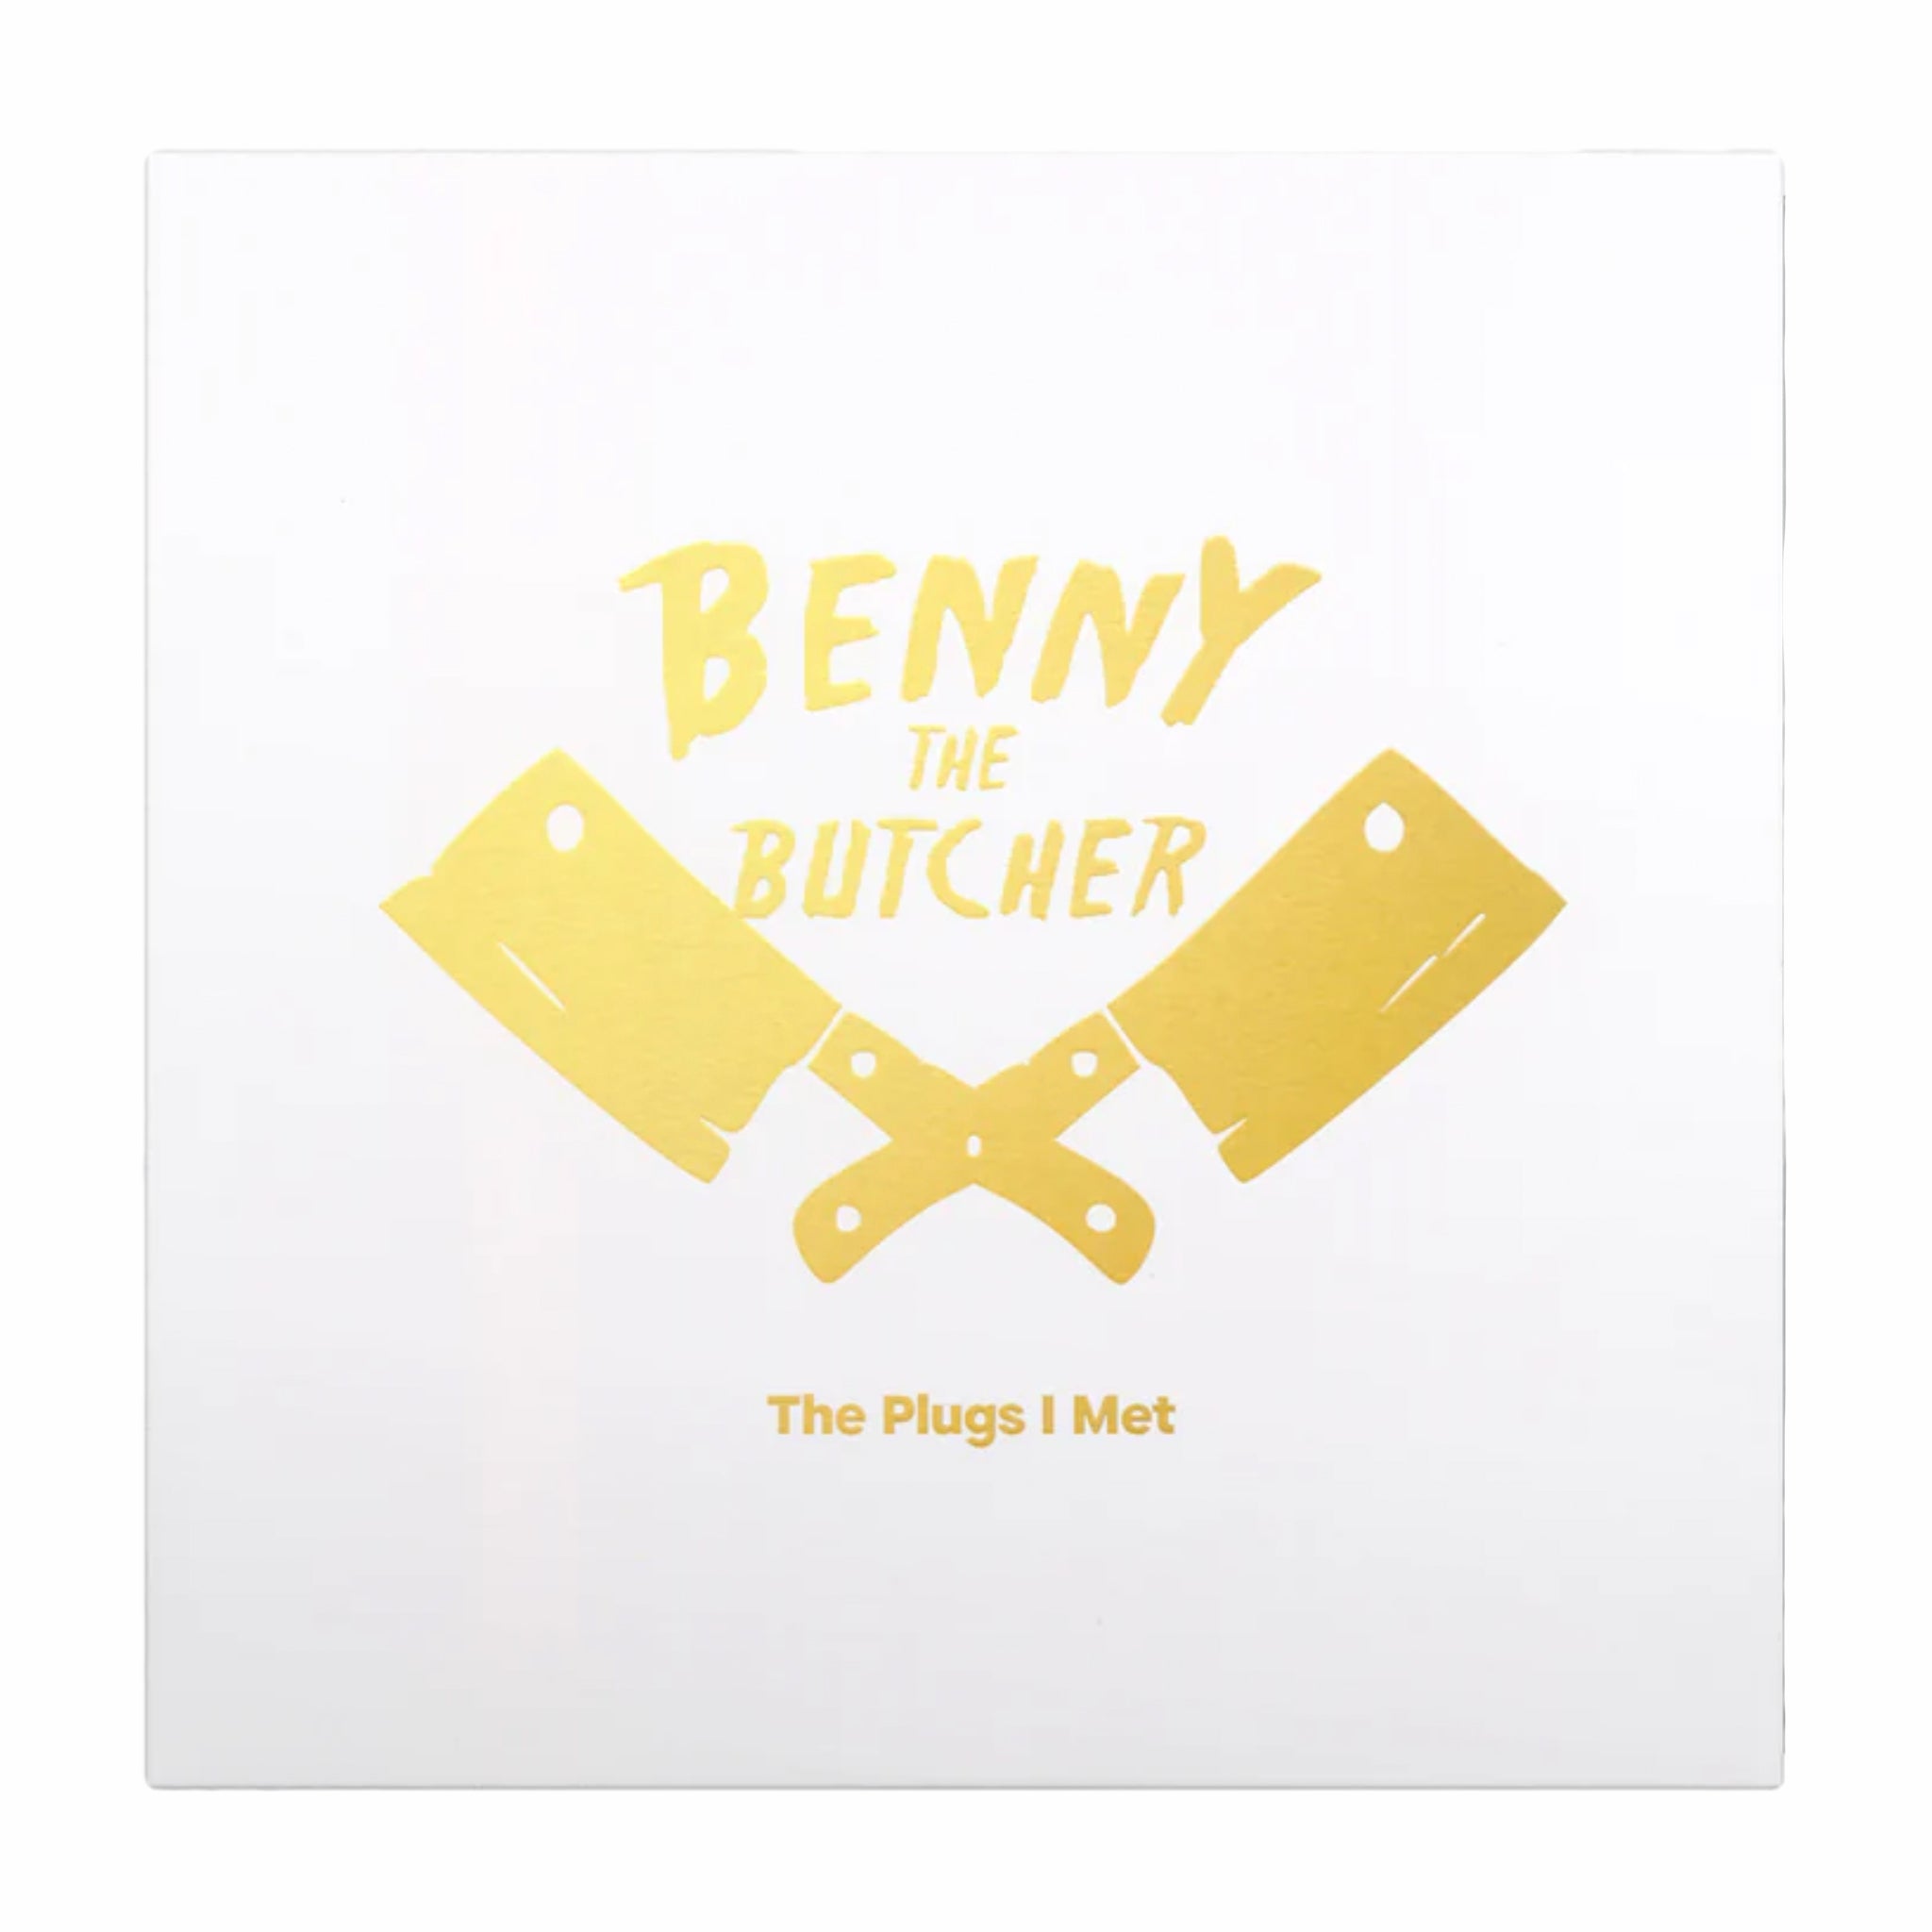 In vinile, Benny The Butcher "Le spine che ho incontrato" LP